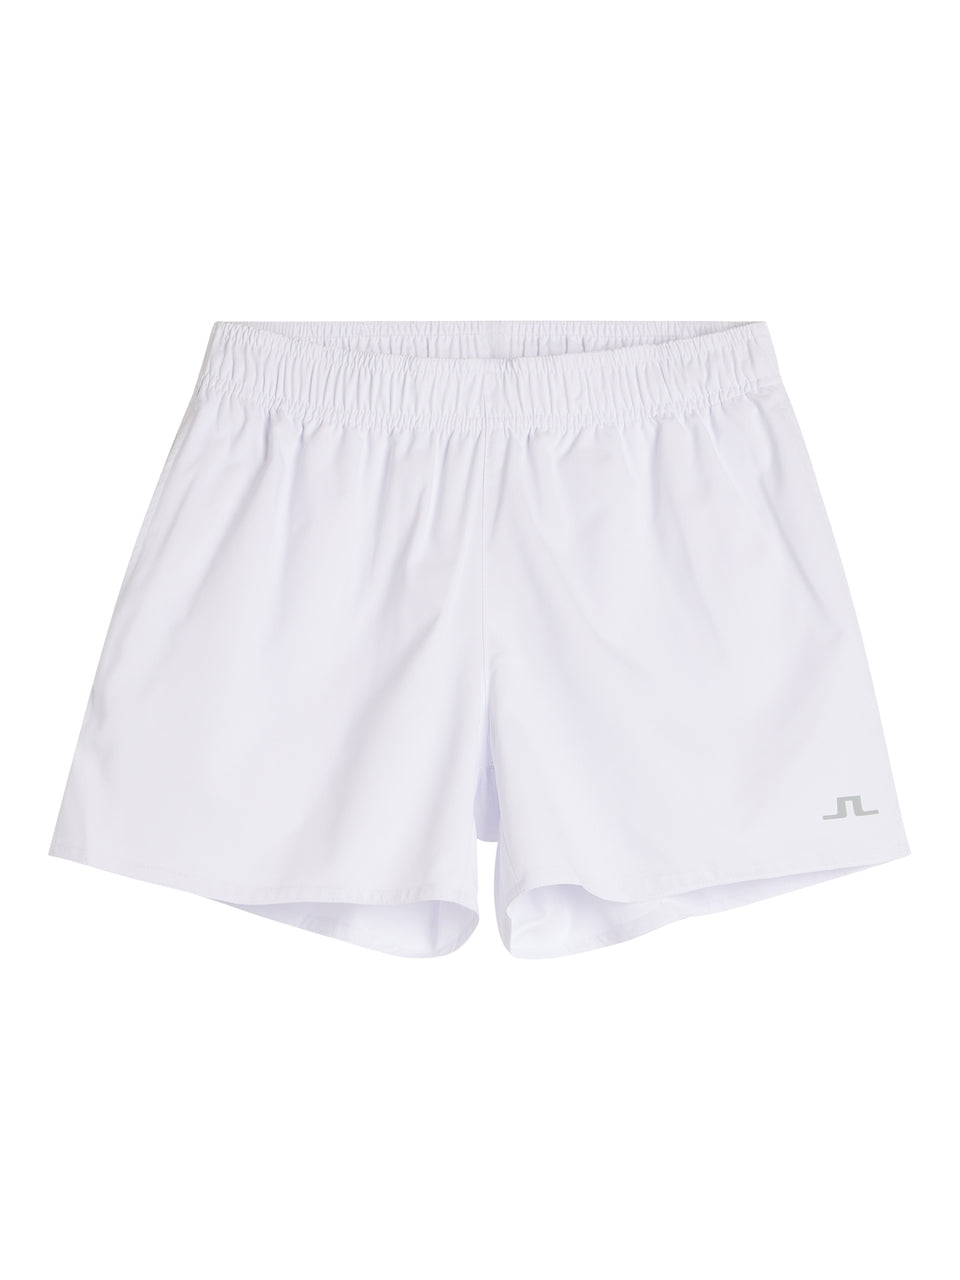 Pricilla Shorts / White